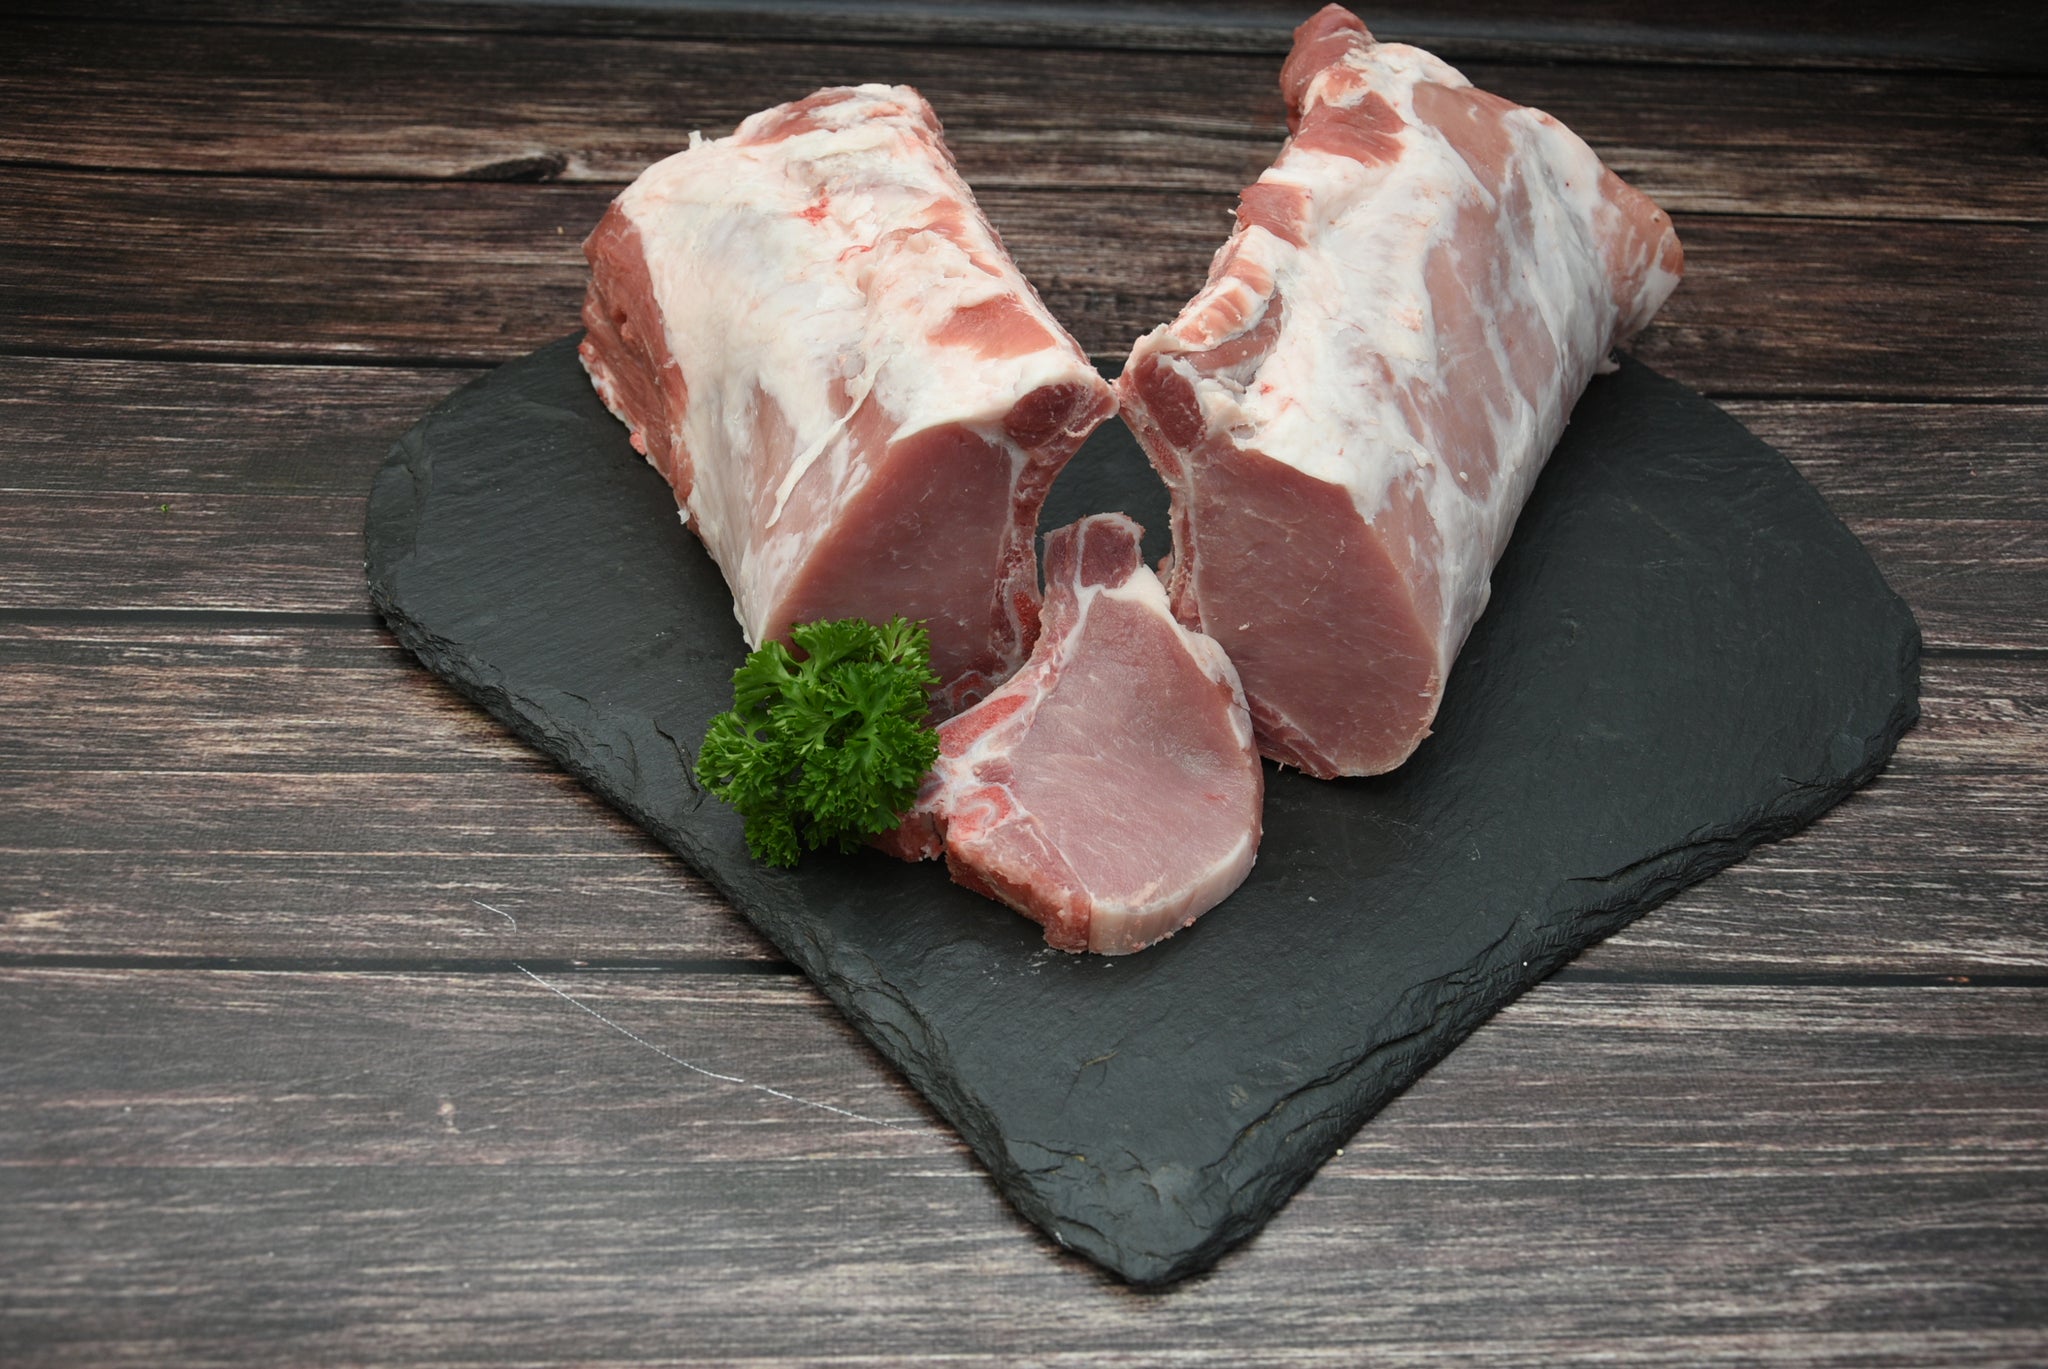 Schweinekotelett, 250g Portion, Preis pro kg 19,90€ - Anzahlung